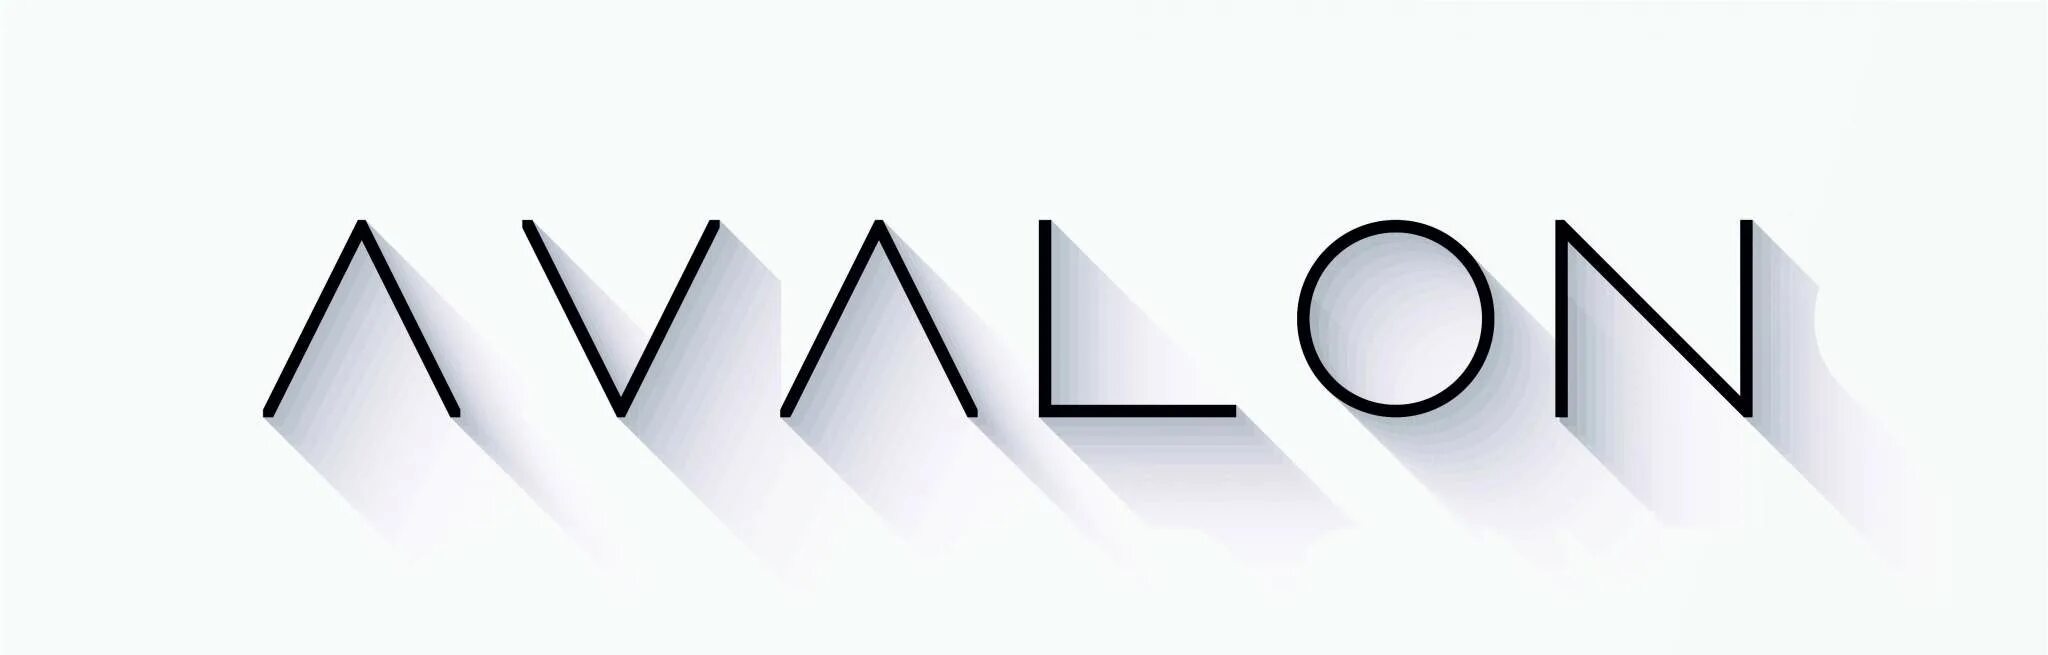 Авалон логотип. Avalon надпись. Авалон магазин одежды логотип. Toyota Avalon лого. Avalon client